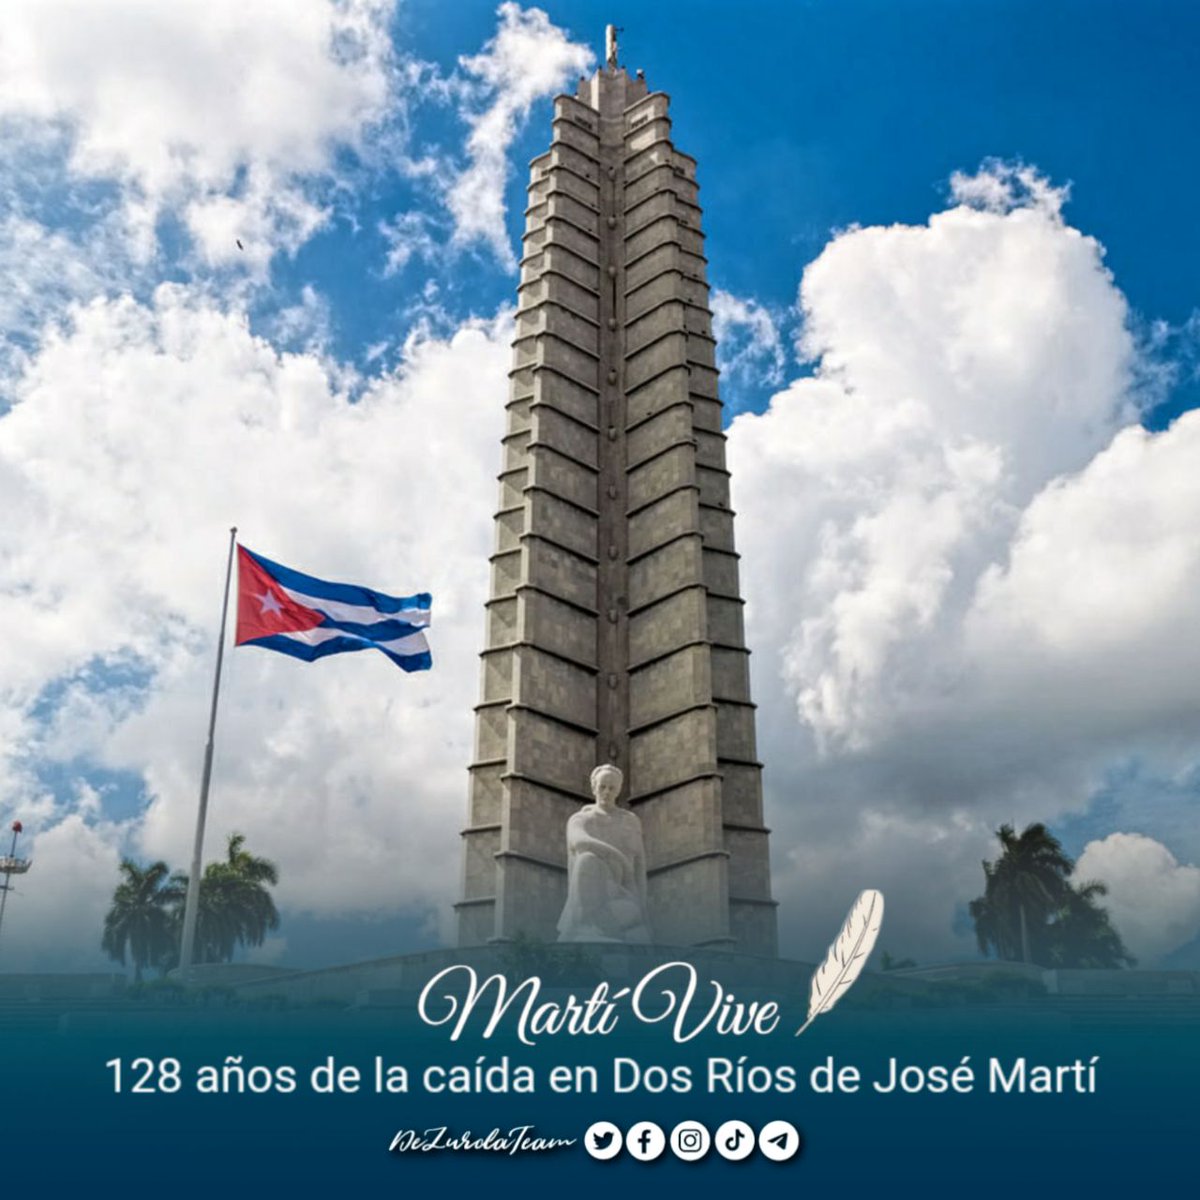 · Cuba y Venezuela pueblos hermanos, luchando por la justicia social. #CubaPorLaVida #MartíVive #CubaCoopera @cubacooperaven @MINSAPCuba @japortalmiranda